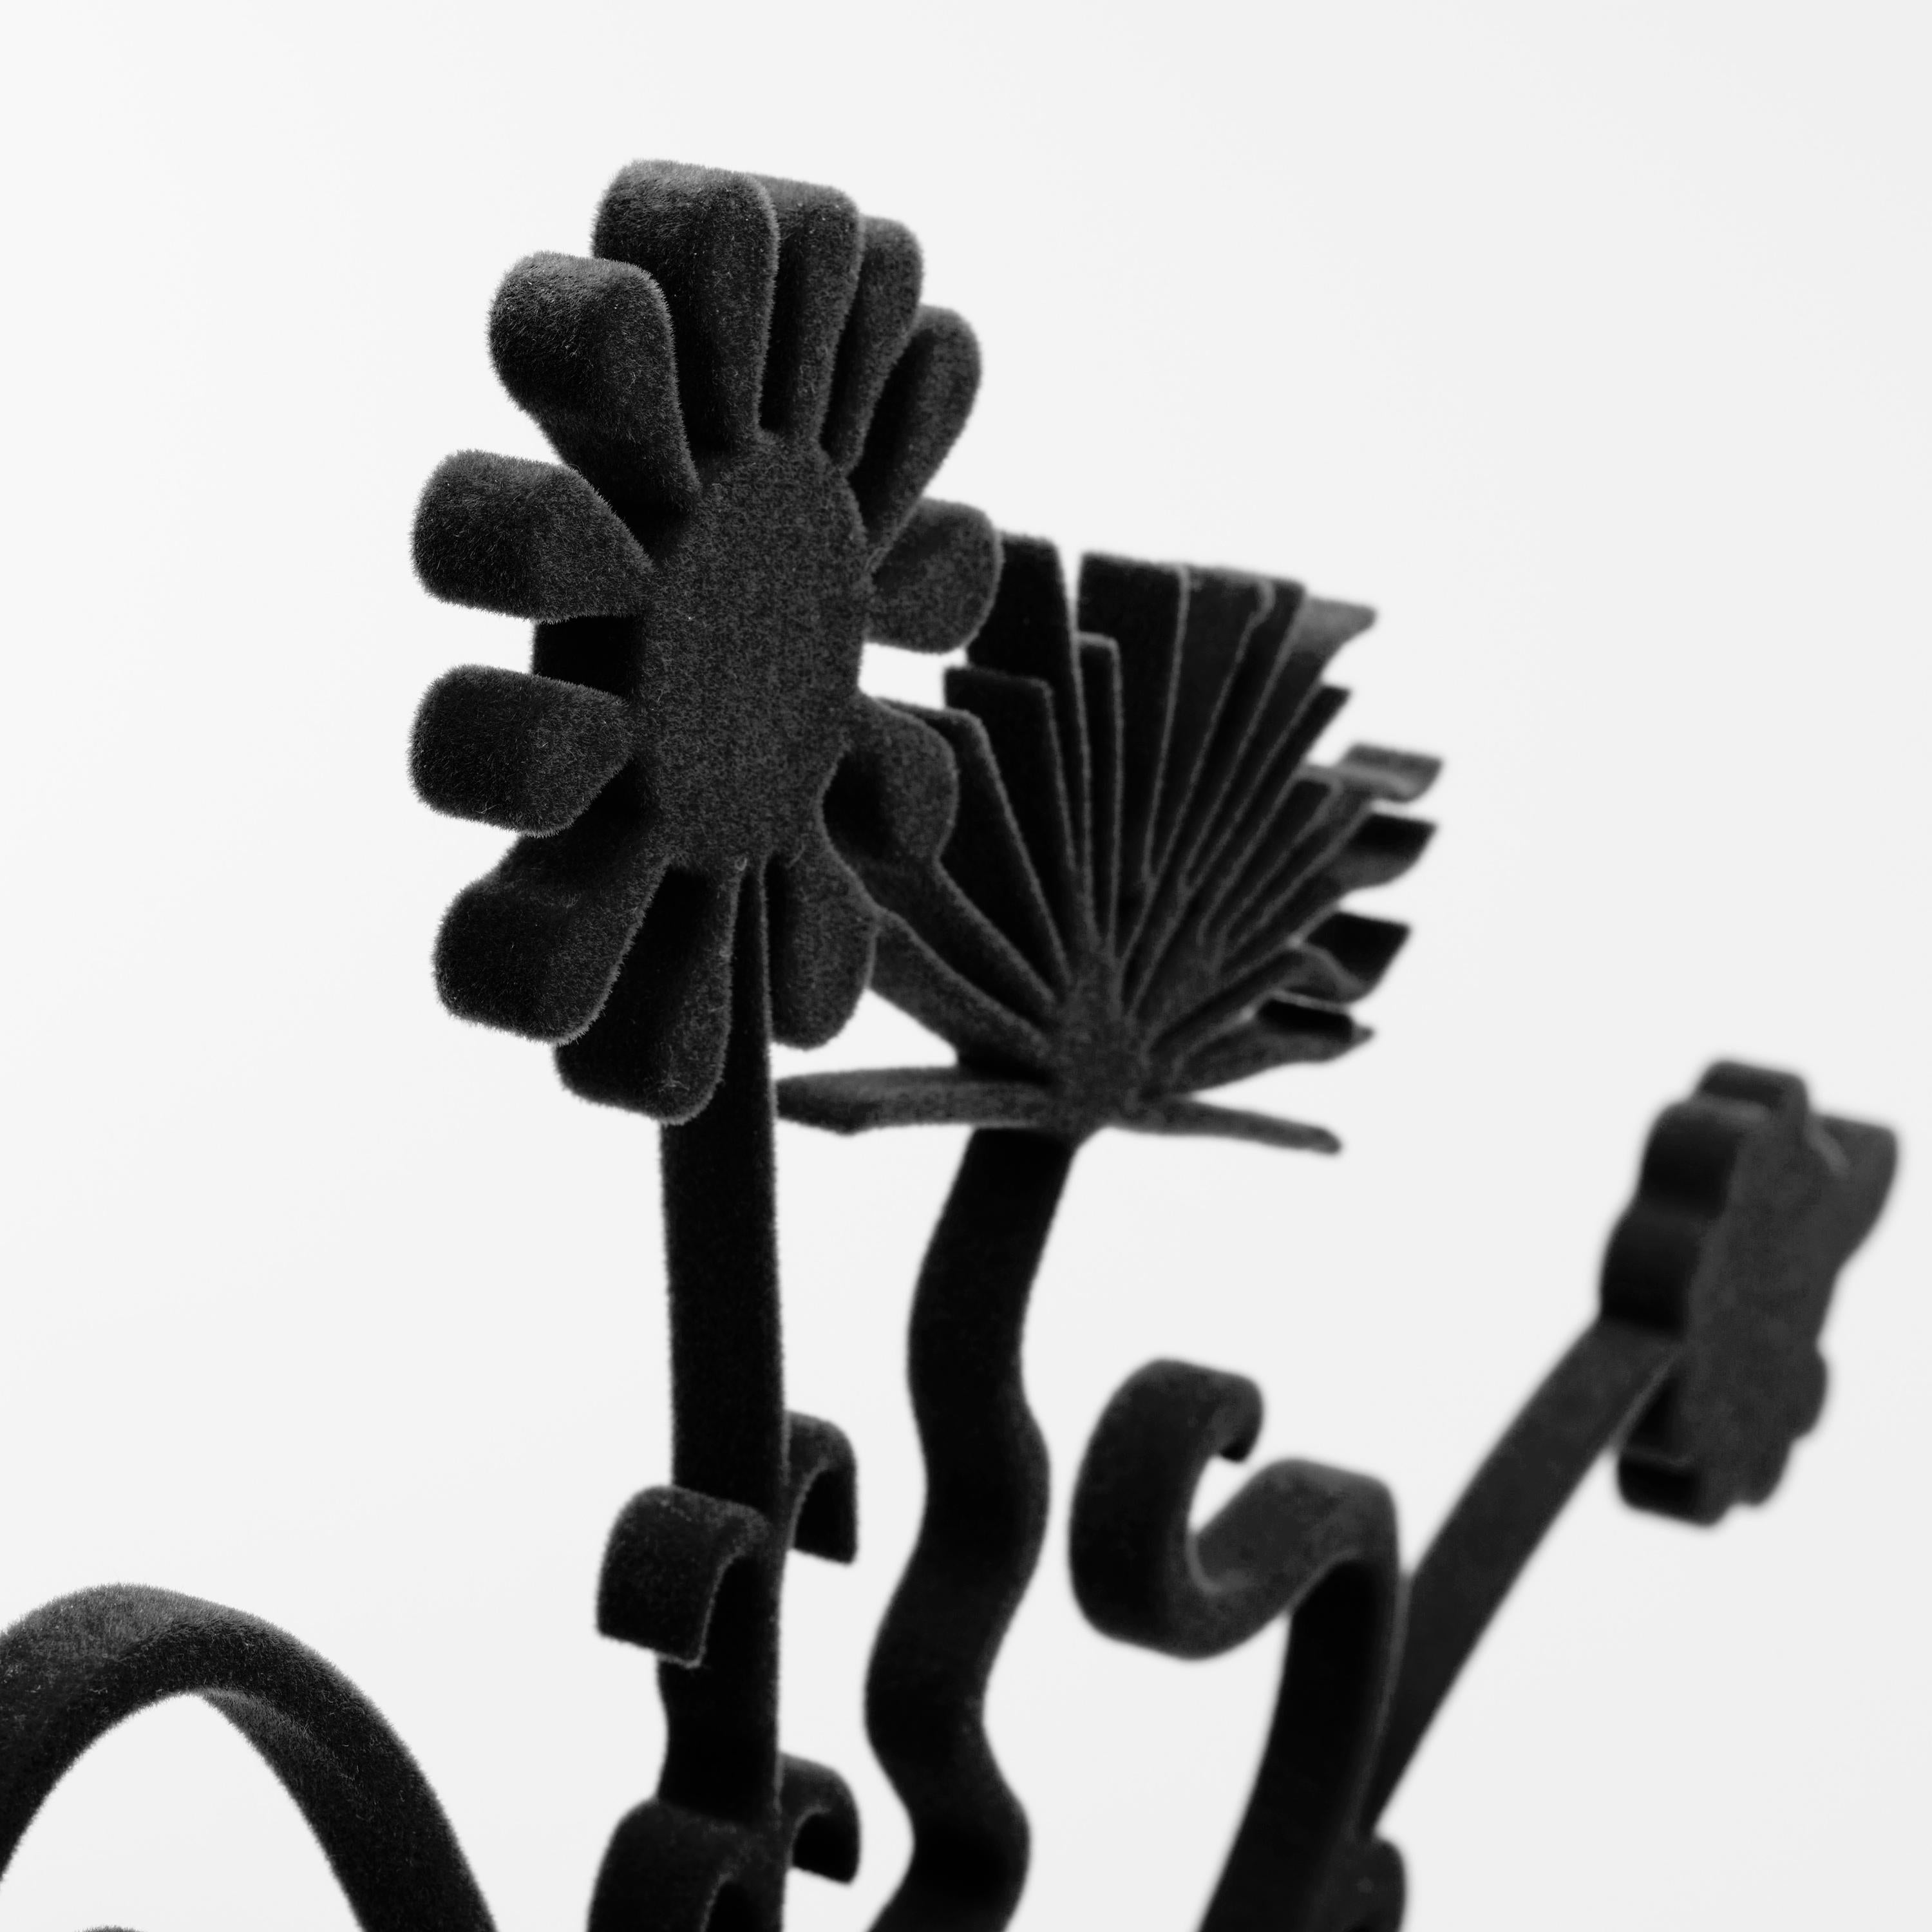 Geformtes Aluminium mit schwarzer Beflockung, montiert auf einem Sockel aus poliertem Edelstahl mit beflockten Füßen.  Größe: 25 x 21 x 0,375 Zoll (Sockel 3,5 x 9 x 0,25 Zoll).  Eingravierte Künstlersignatur am Sockel; gestempelte Editionsnummer und